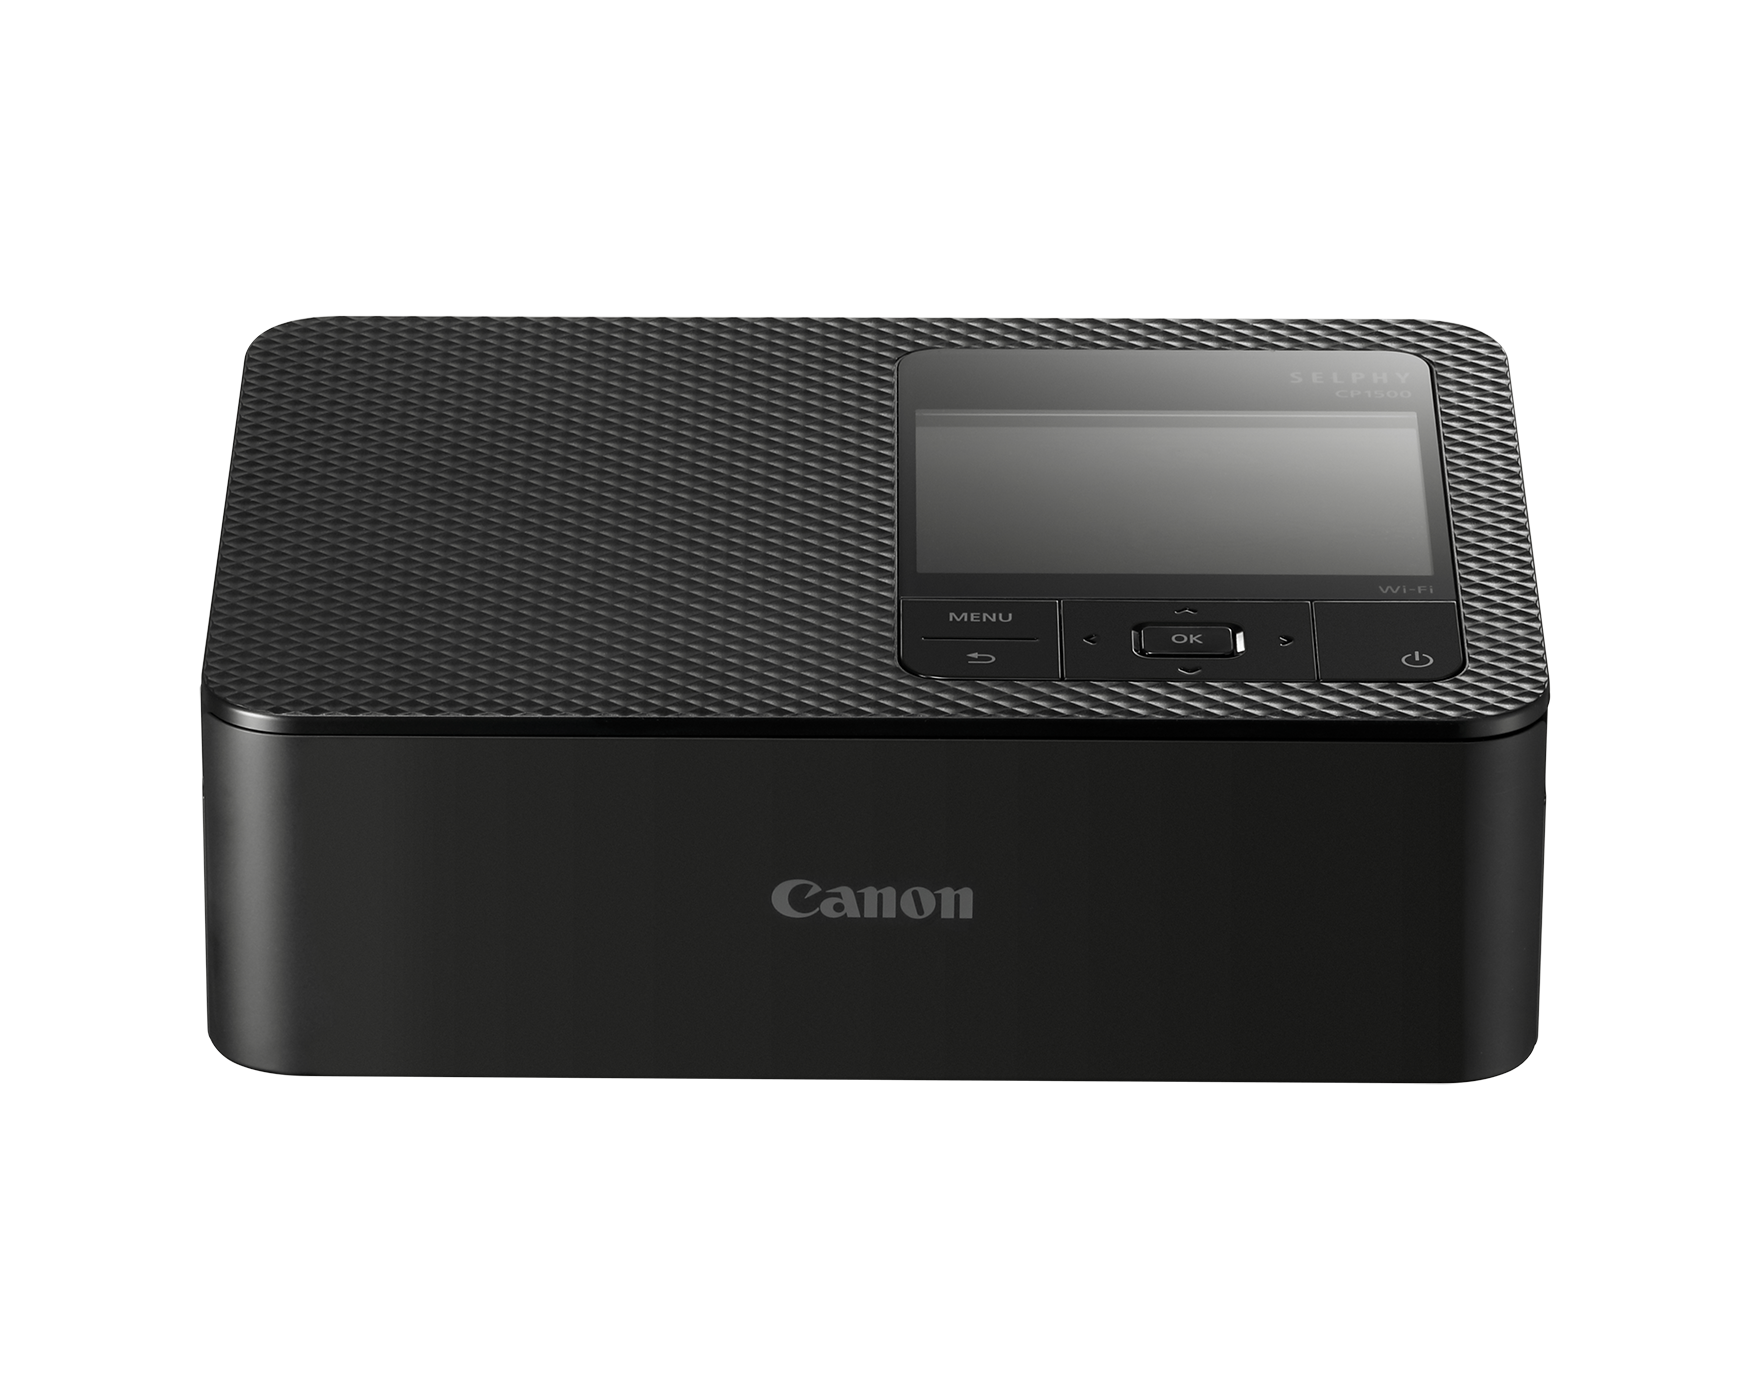 Canon CP1500 vs CP1300